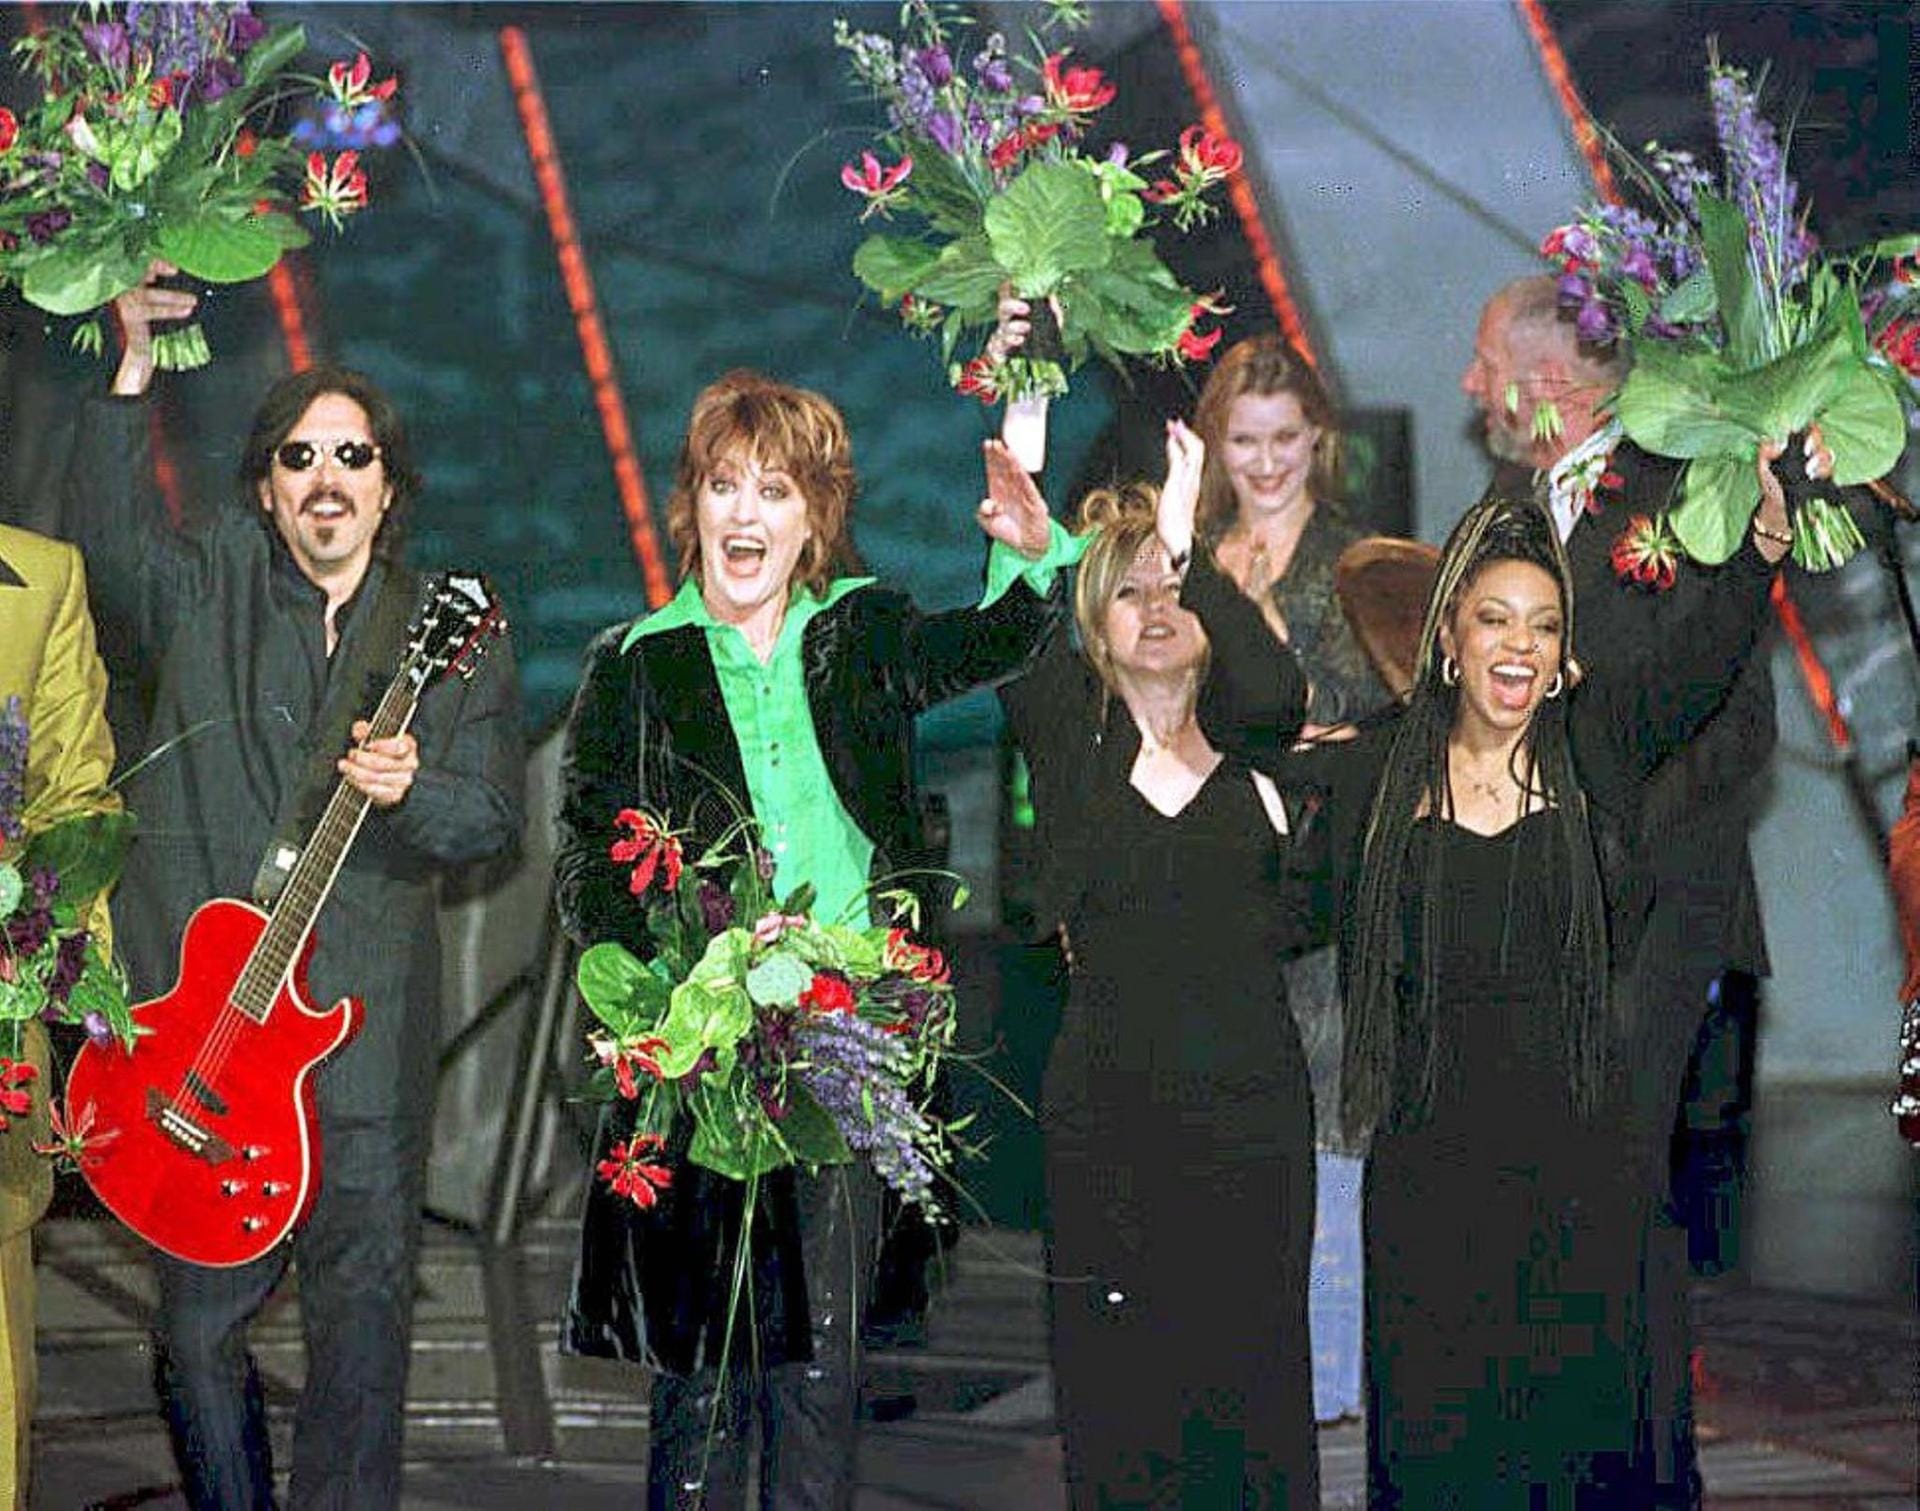 Die britische Band Katrina & The Waves gewann 1997 mit "Love Shine Again".